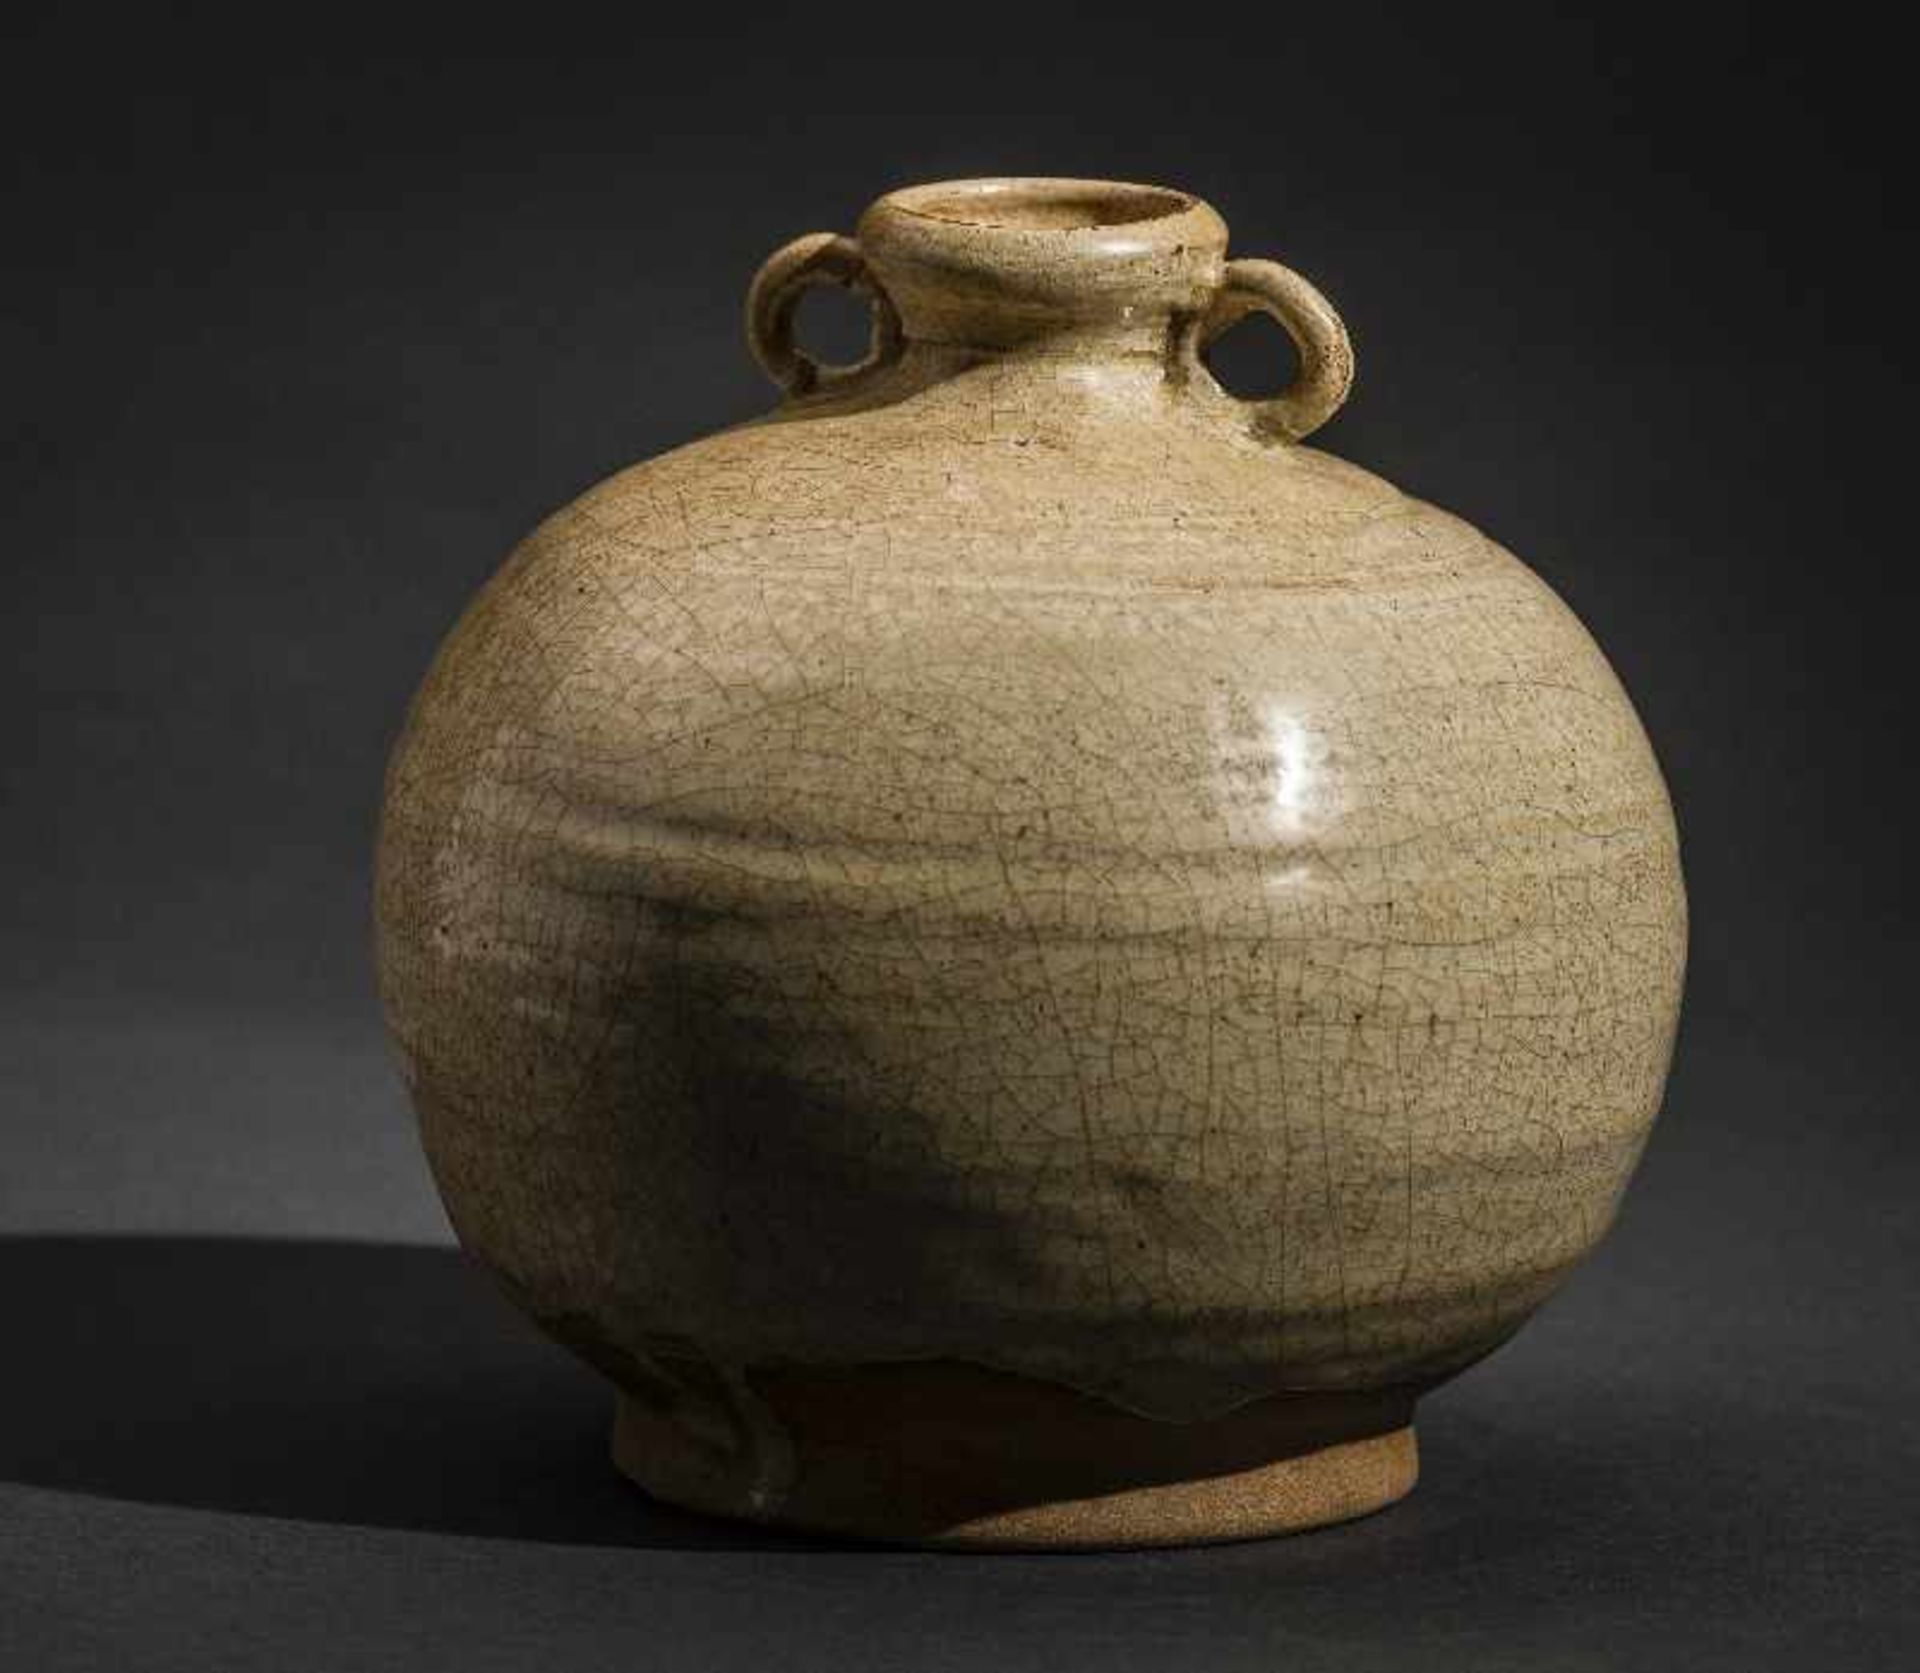 KUGELIGES GEFÄSS MIT ÖSENHENKEL Glasierte Keramik. China, Qing (1644-1911) Lichte Glasur mit - Image 2 of 4